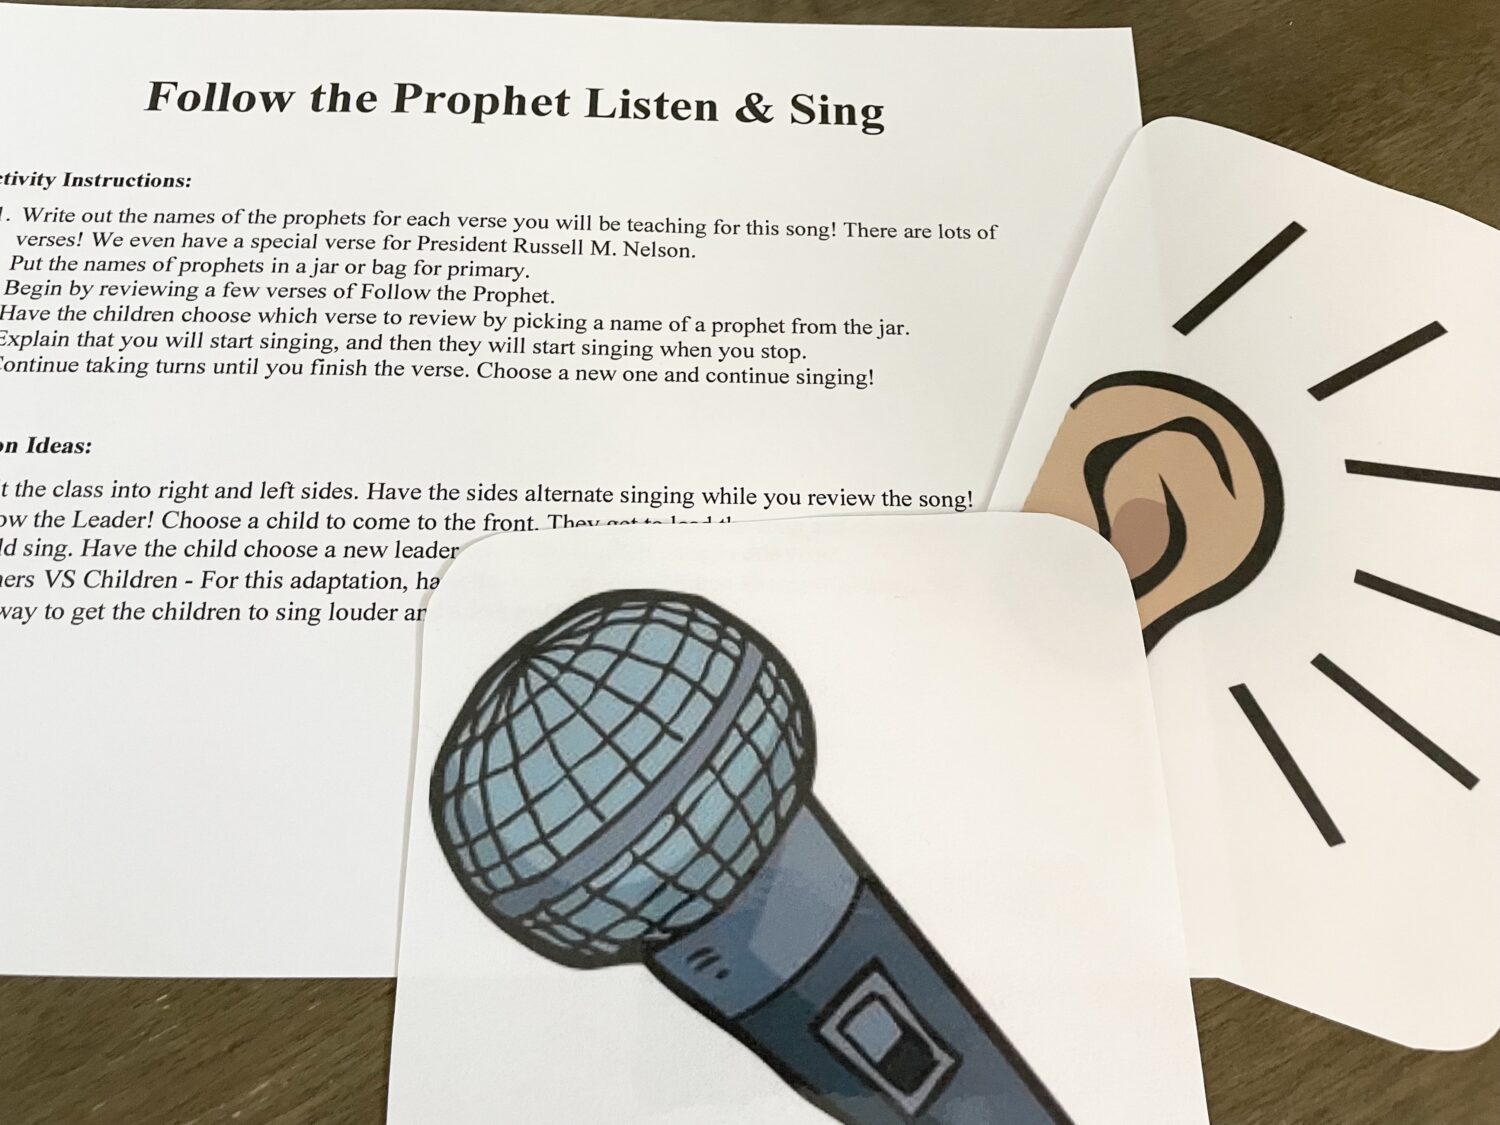 Follow the Prophet Listen & Sing Easy ideas for Music Leaders IMG 6445 e1651696955618